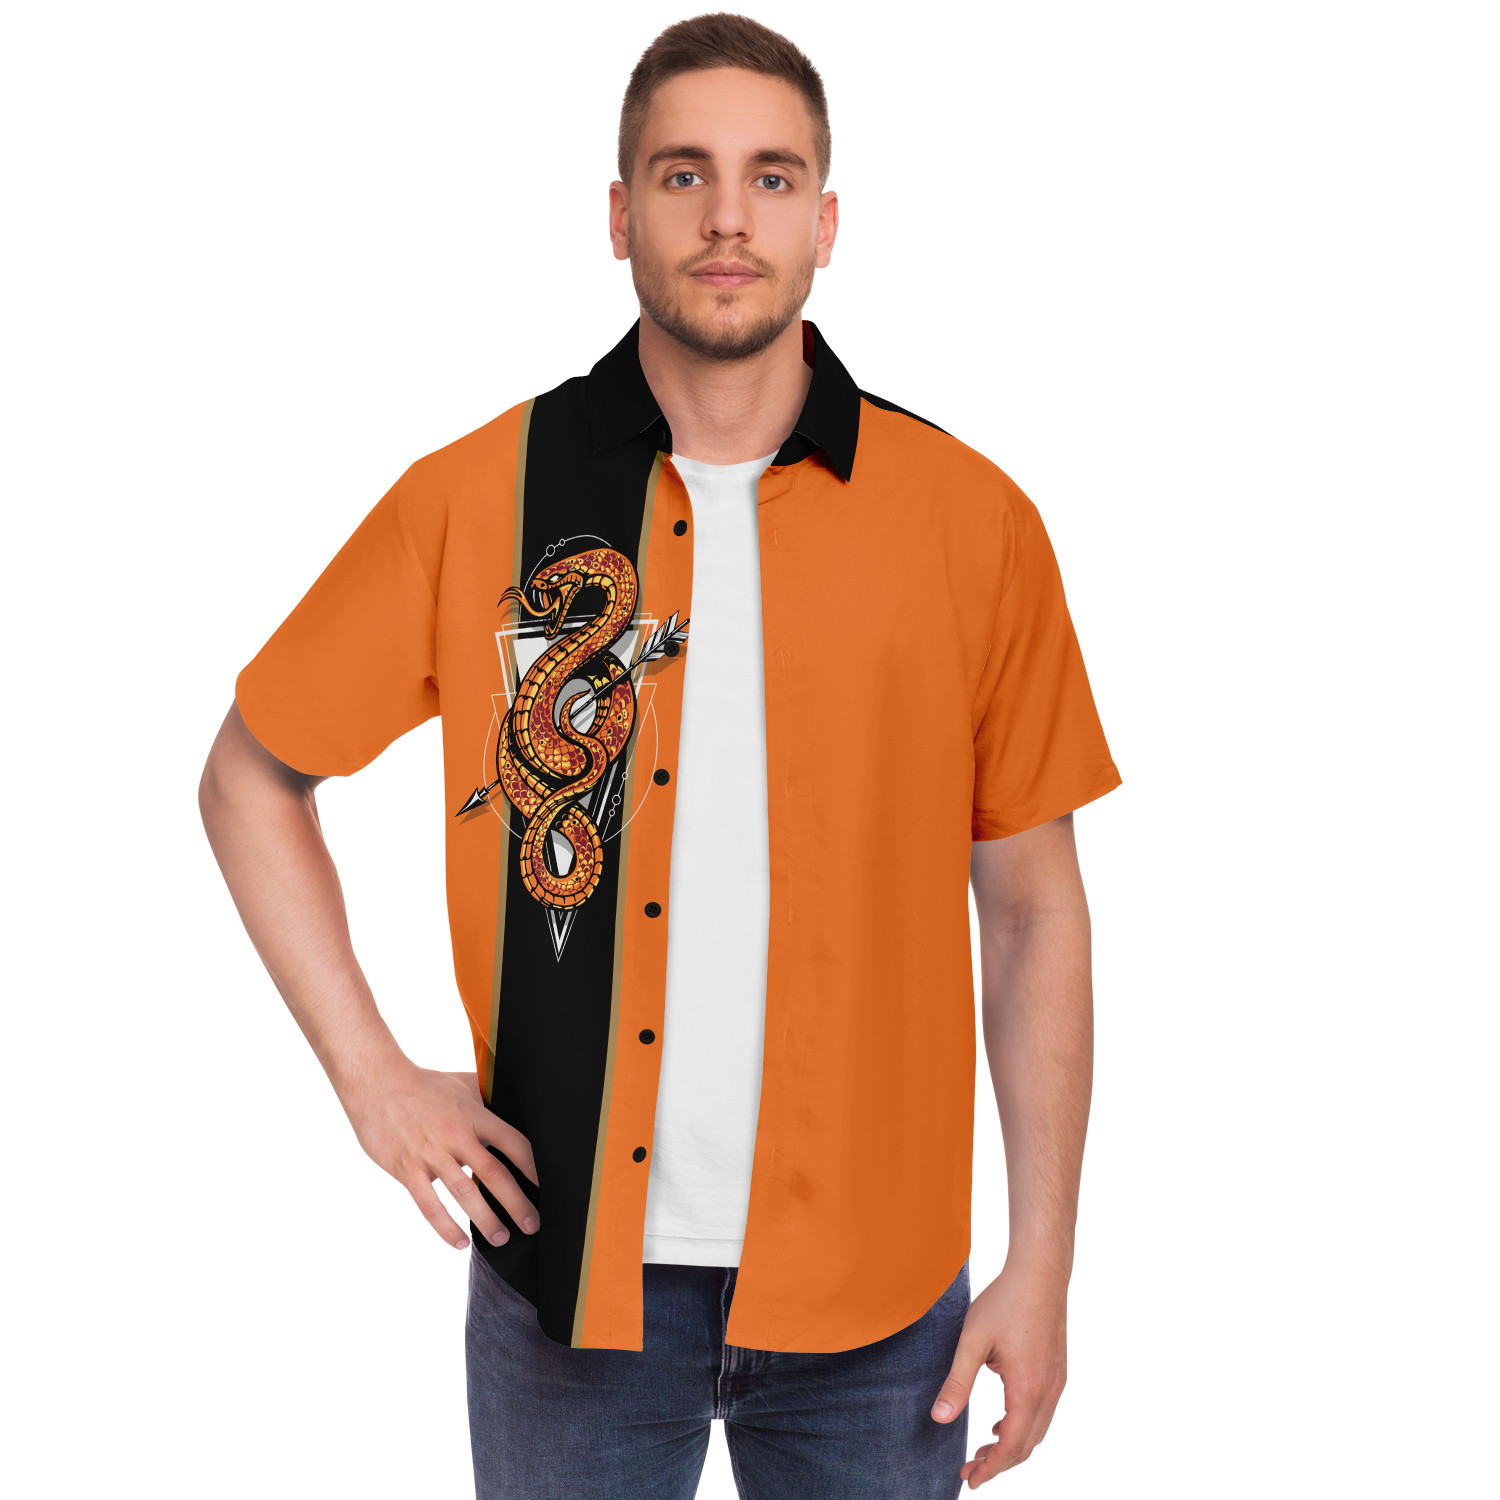 Viper Retro Bowling Shirt